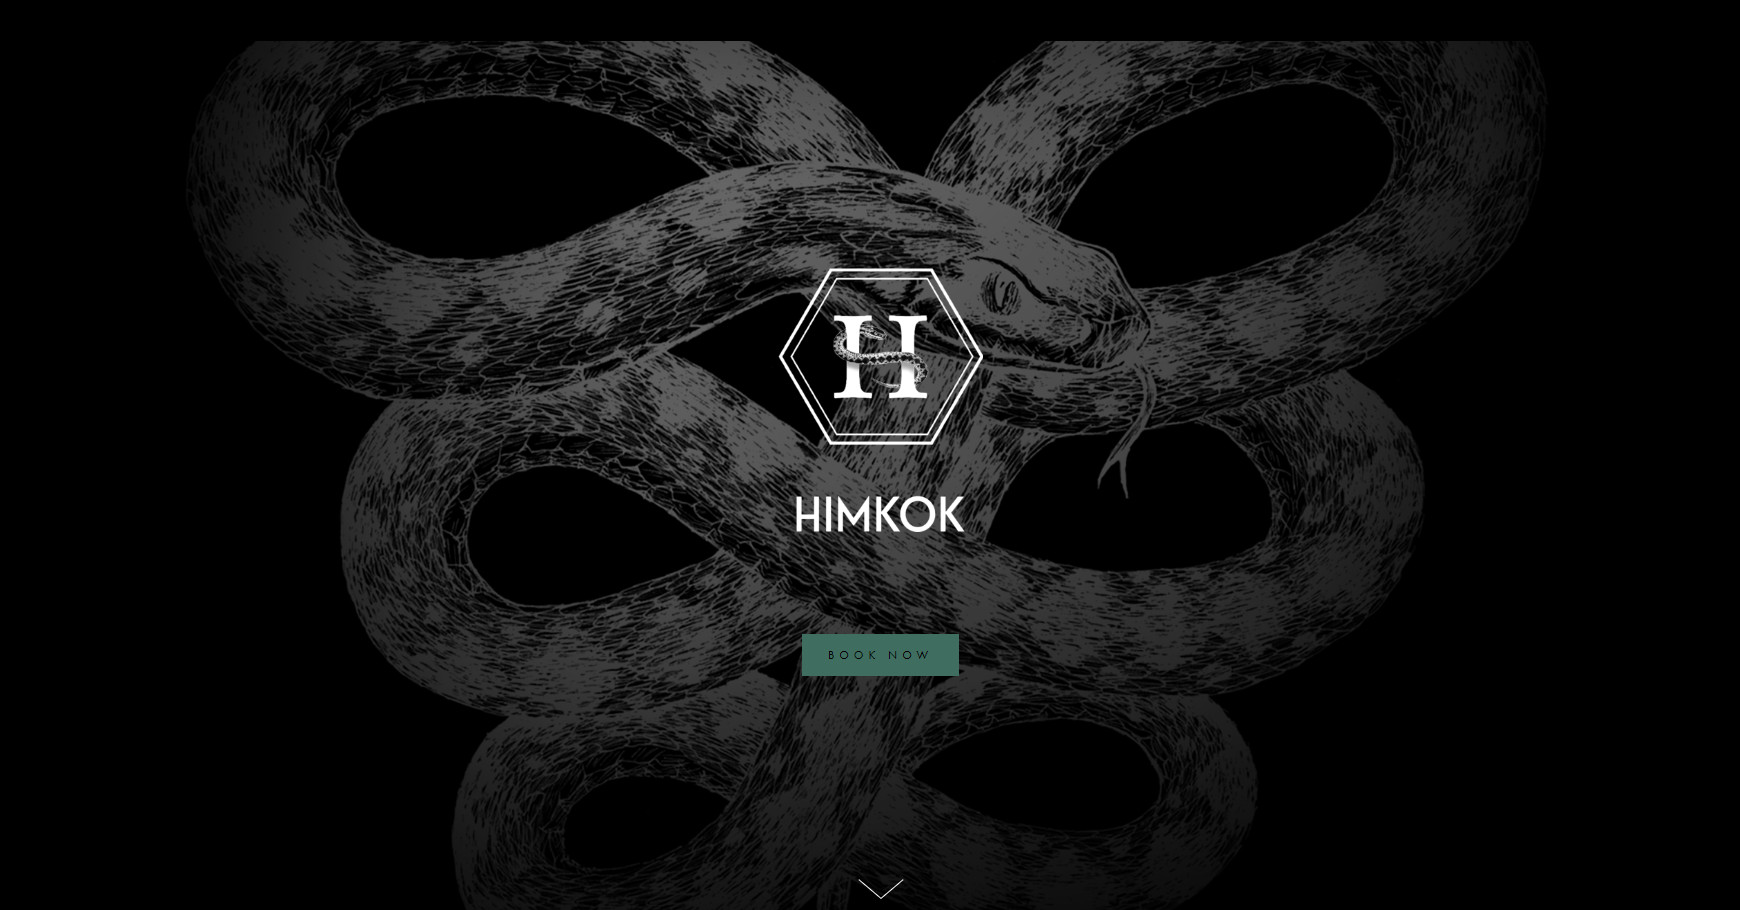 6 best bar websites example: Himkok